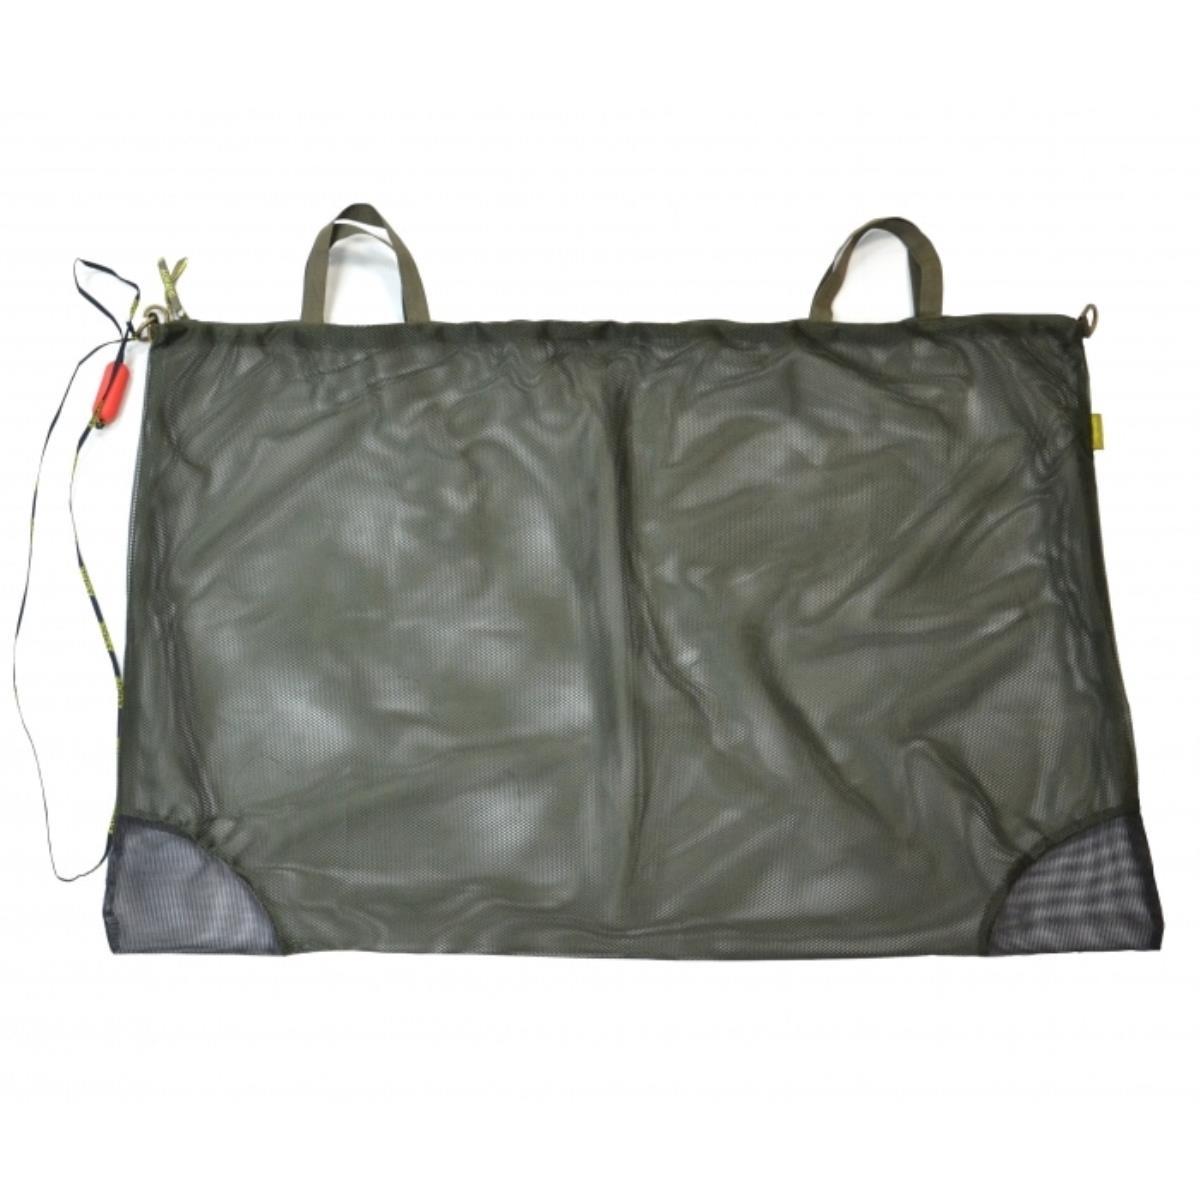 Мешок для хранения рыбы МР-02 AQUATIC комплект футболка шорты сумка мешок